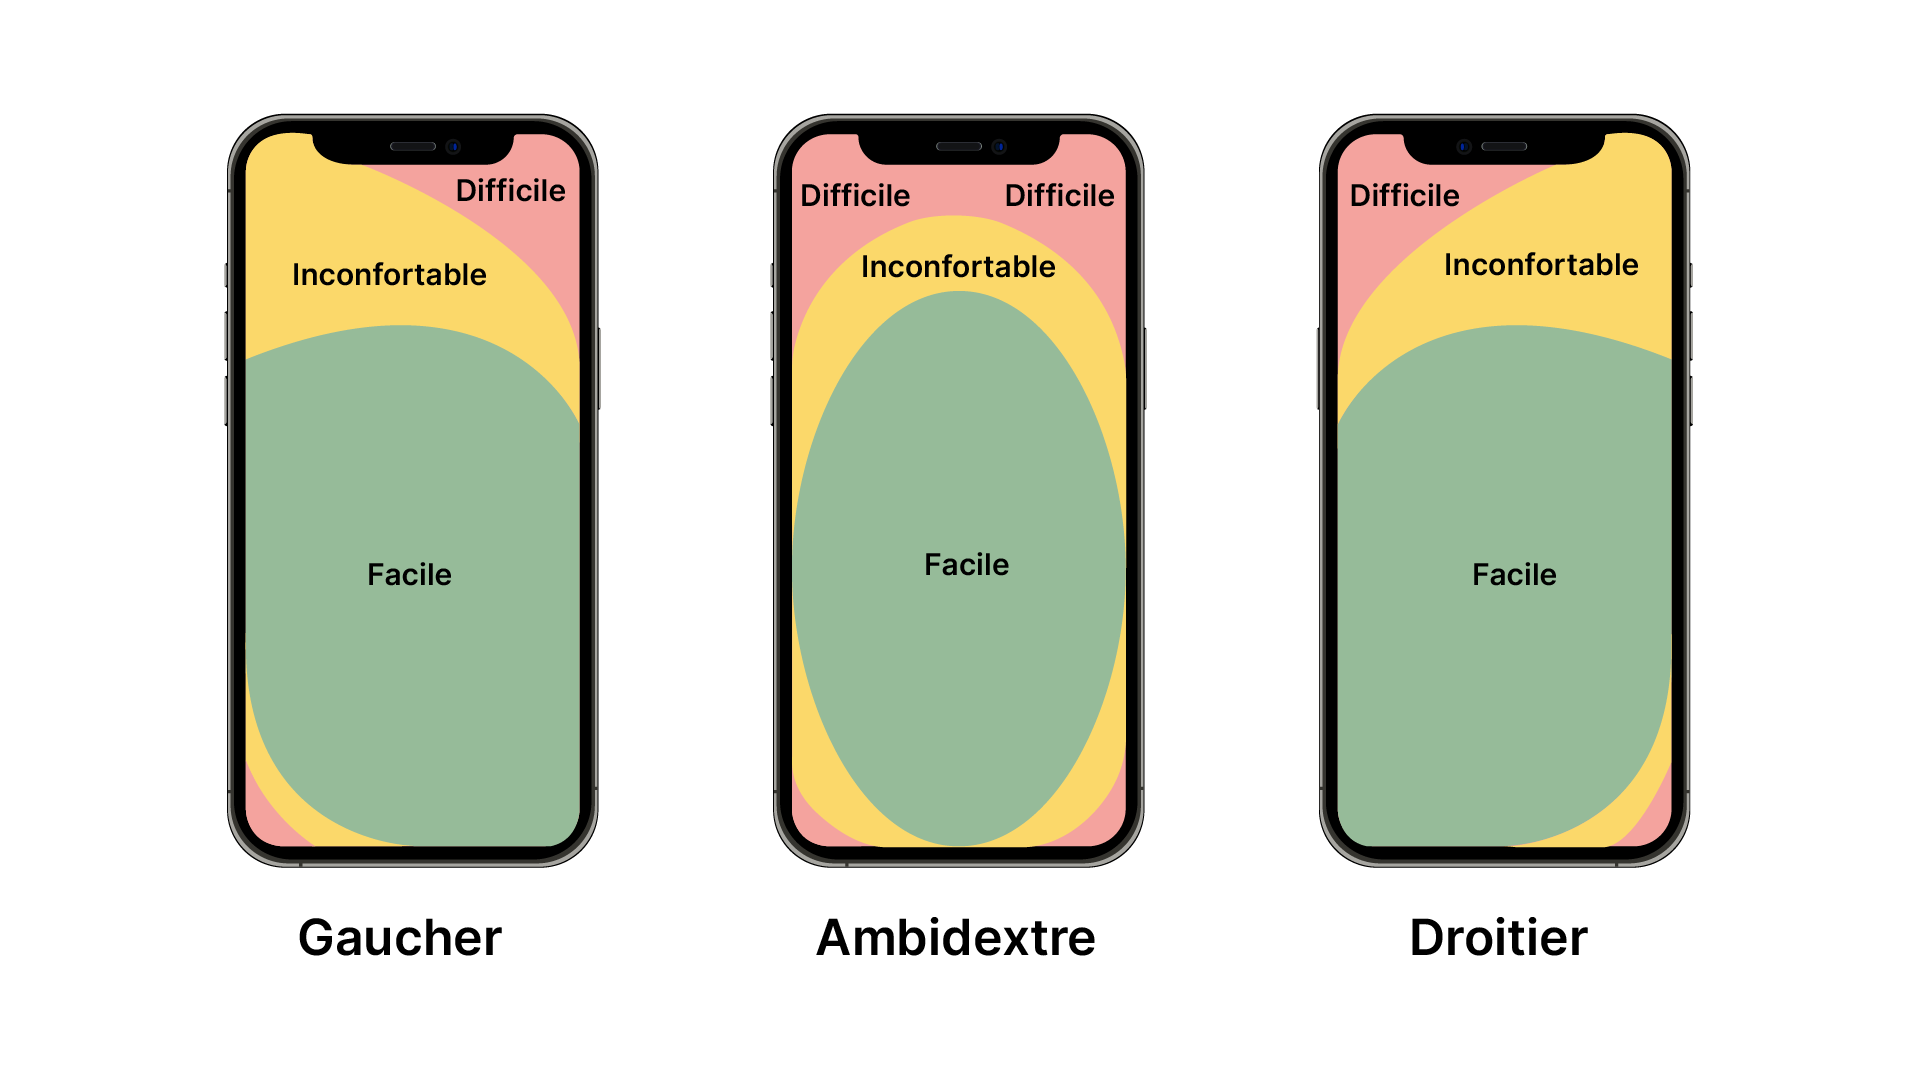 On voit les zones d'un écran mobile qu'il est facile de toucher selon que l'on est gaucher, droitier ou ambidextre. En vert, au centre et en bas, c'est le plus facile. En jaune, vers le haut c'est inconfortable. En rouge, aux extrémités, c'est difficil